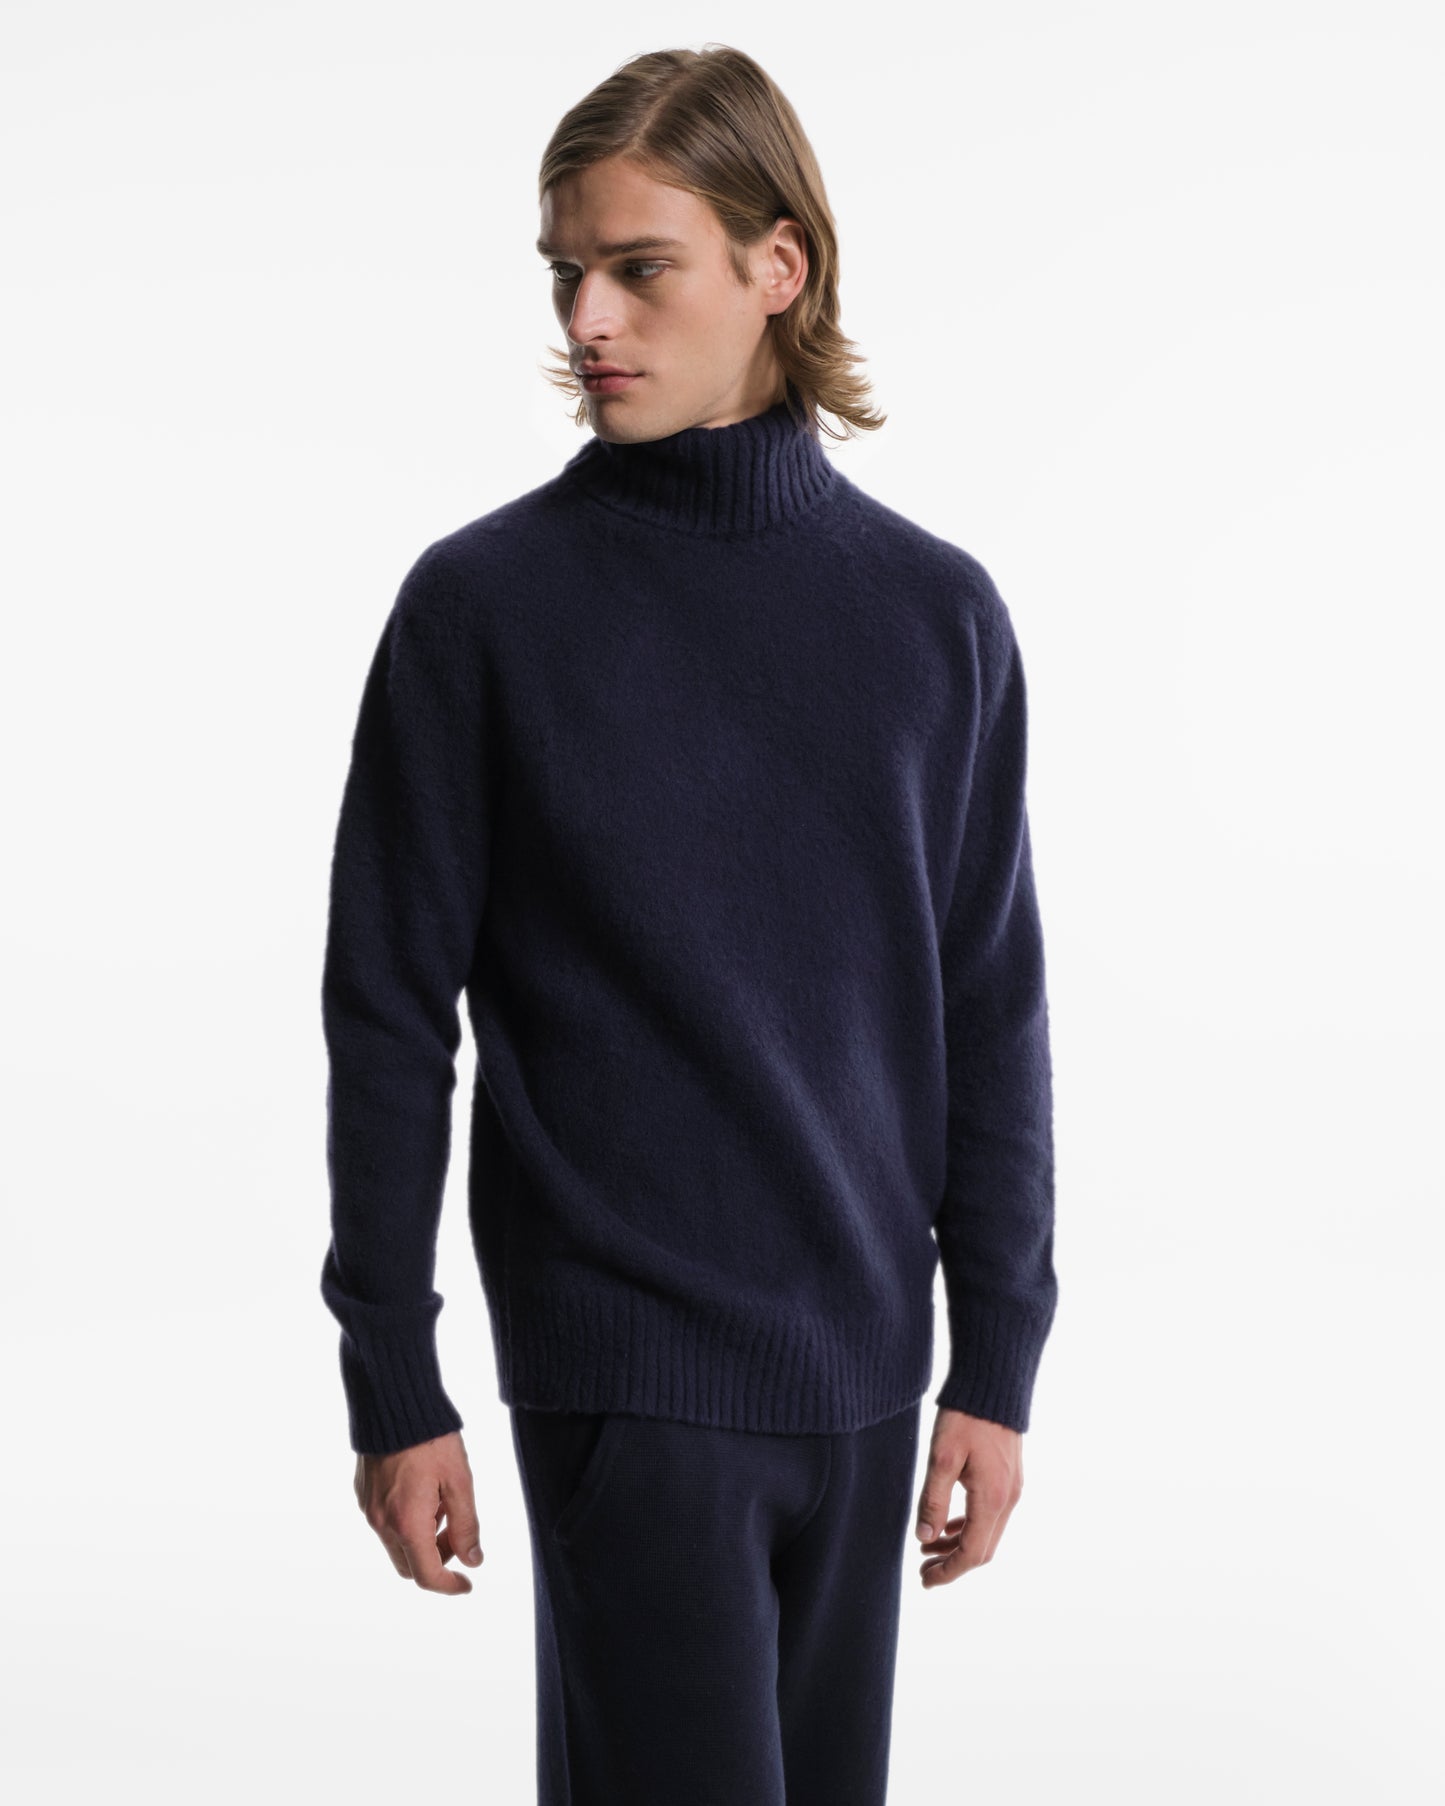 Soft turtleneck in blue wool